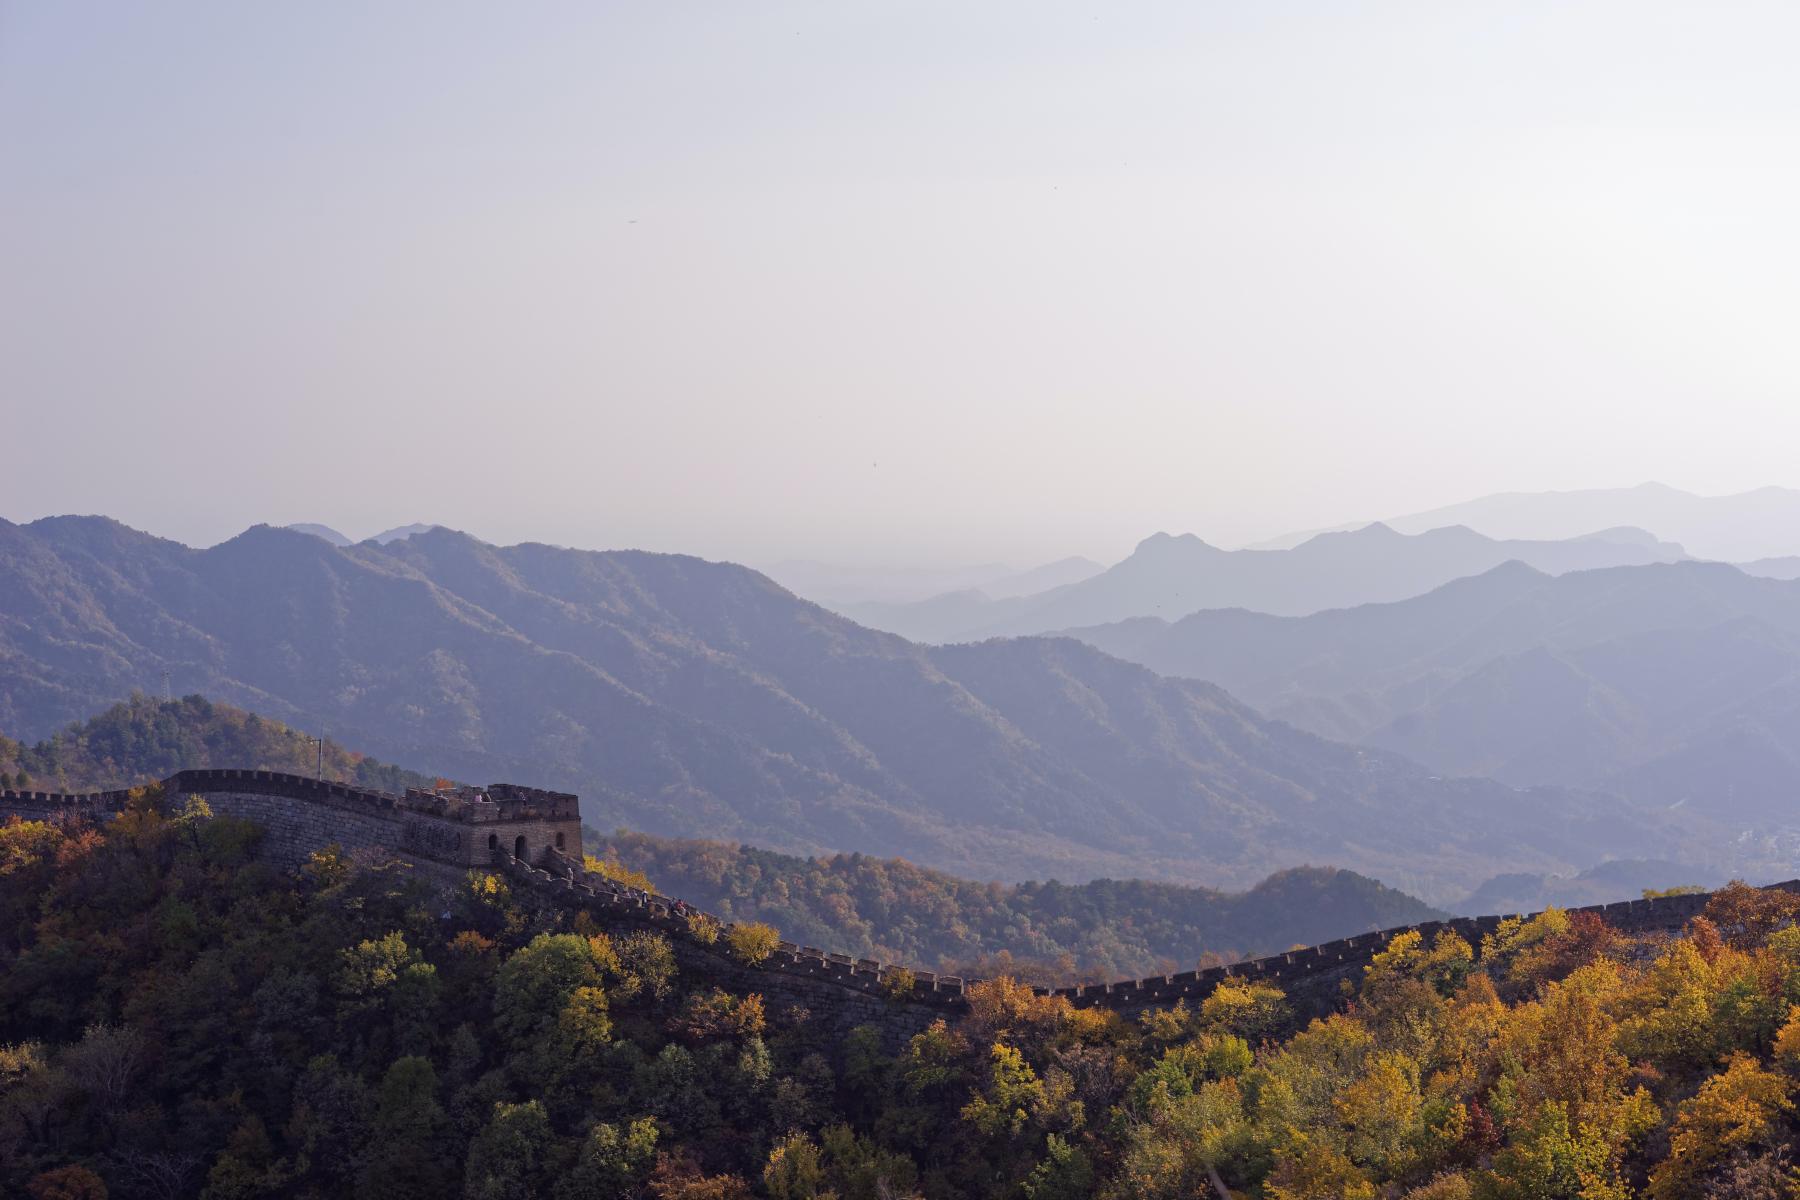 great wall of China